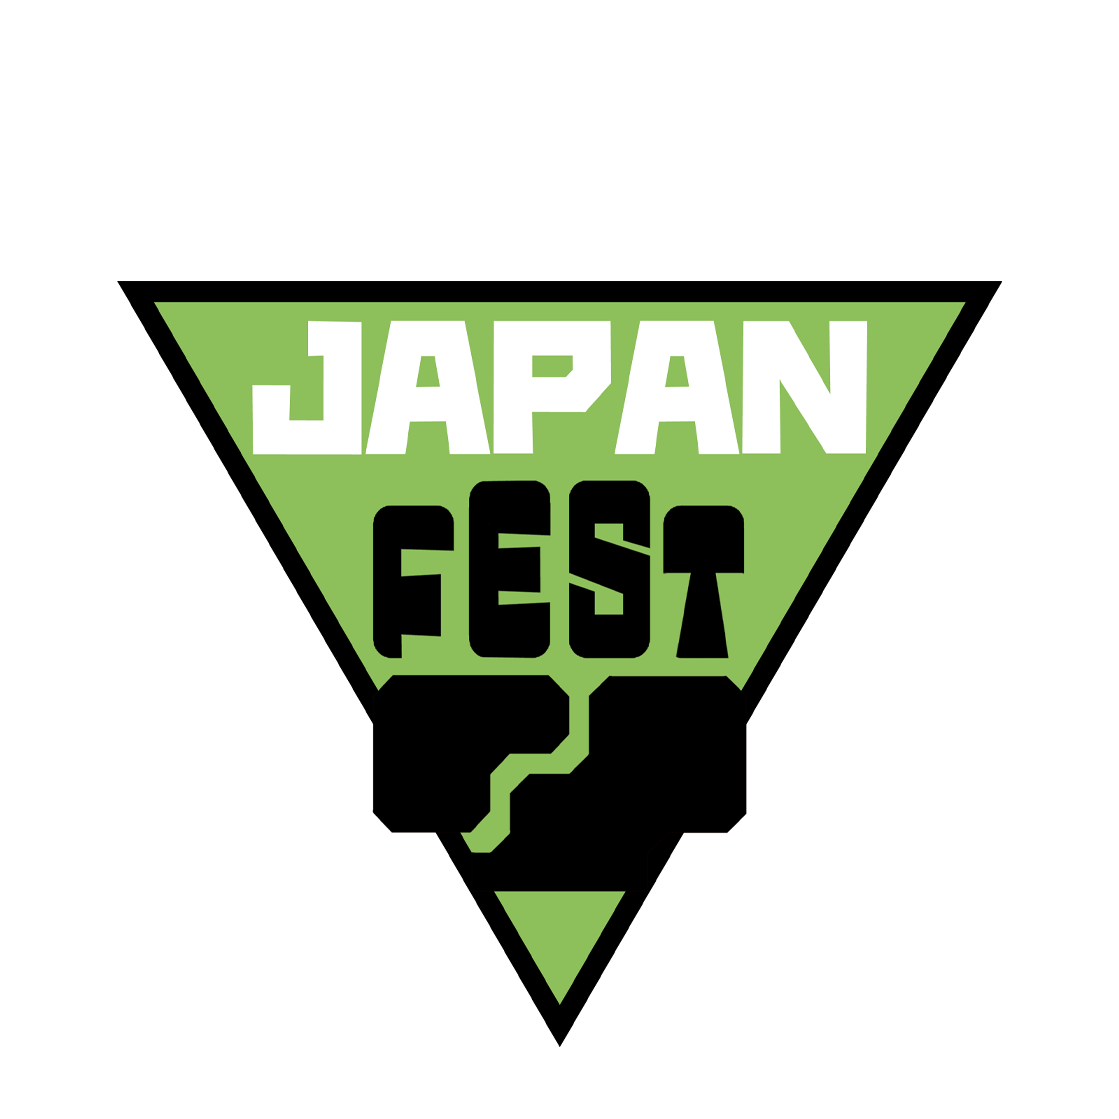 Japan Fest